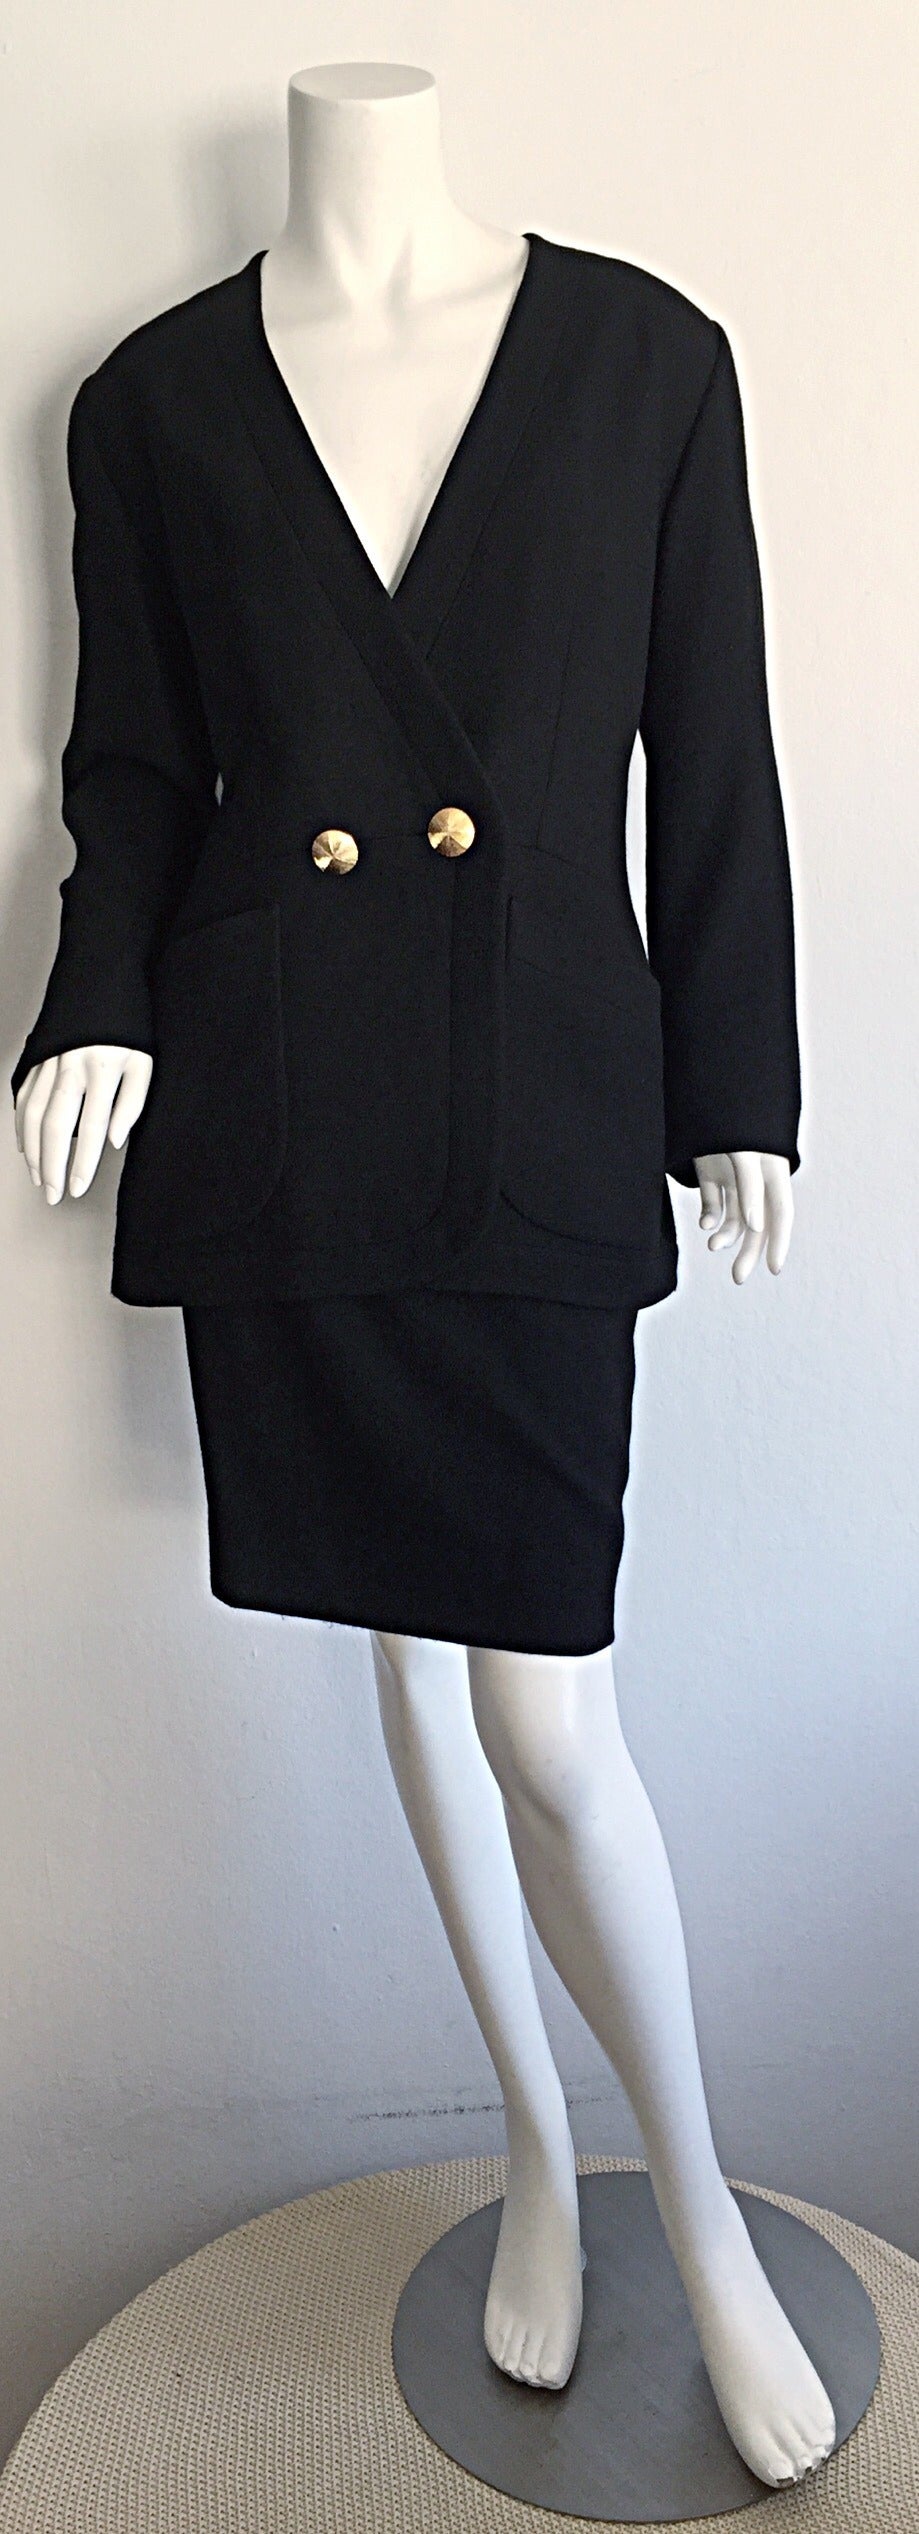 Magnifique tailleur jupe vintage Yves Saint Laurent 'Rive Gauche' noir ! Encolure flatteuse sur la veste, avec deux boutons dorés en dôme à la taille et aux poignets. Un bouton à l'intérieur de la taille permet également une fermeture